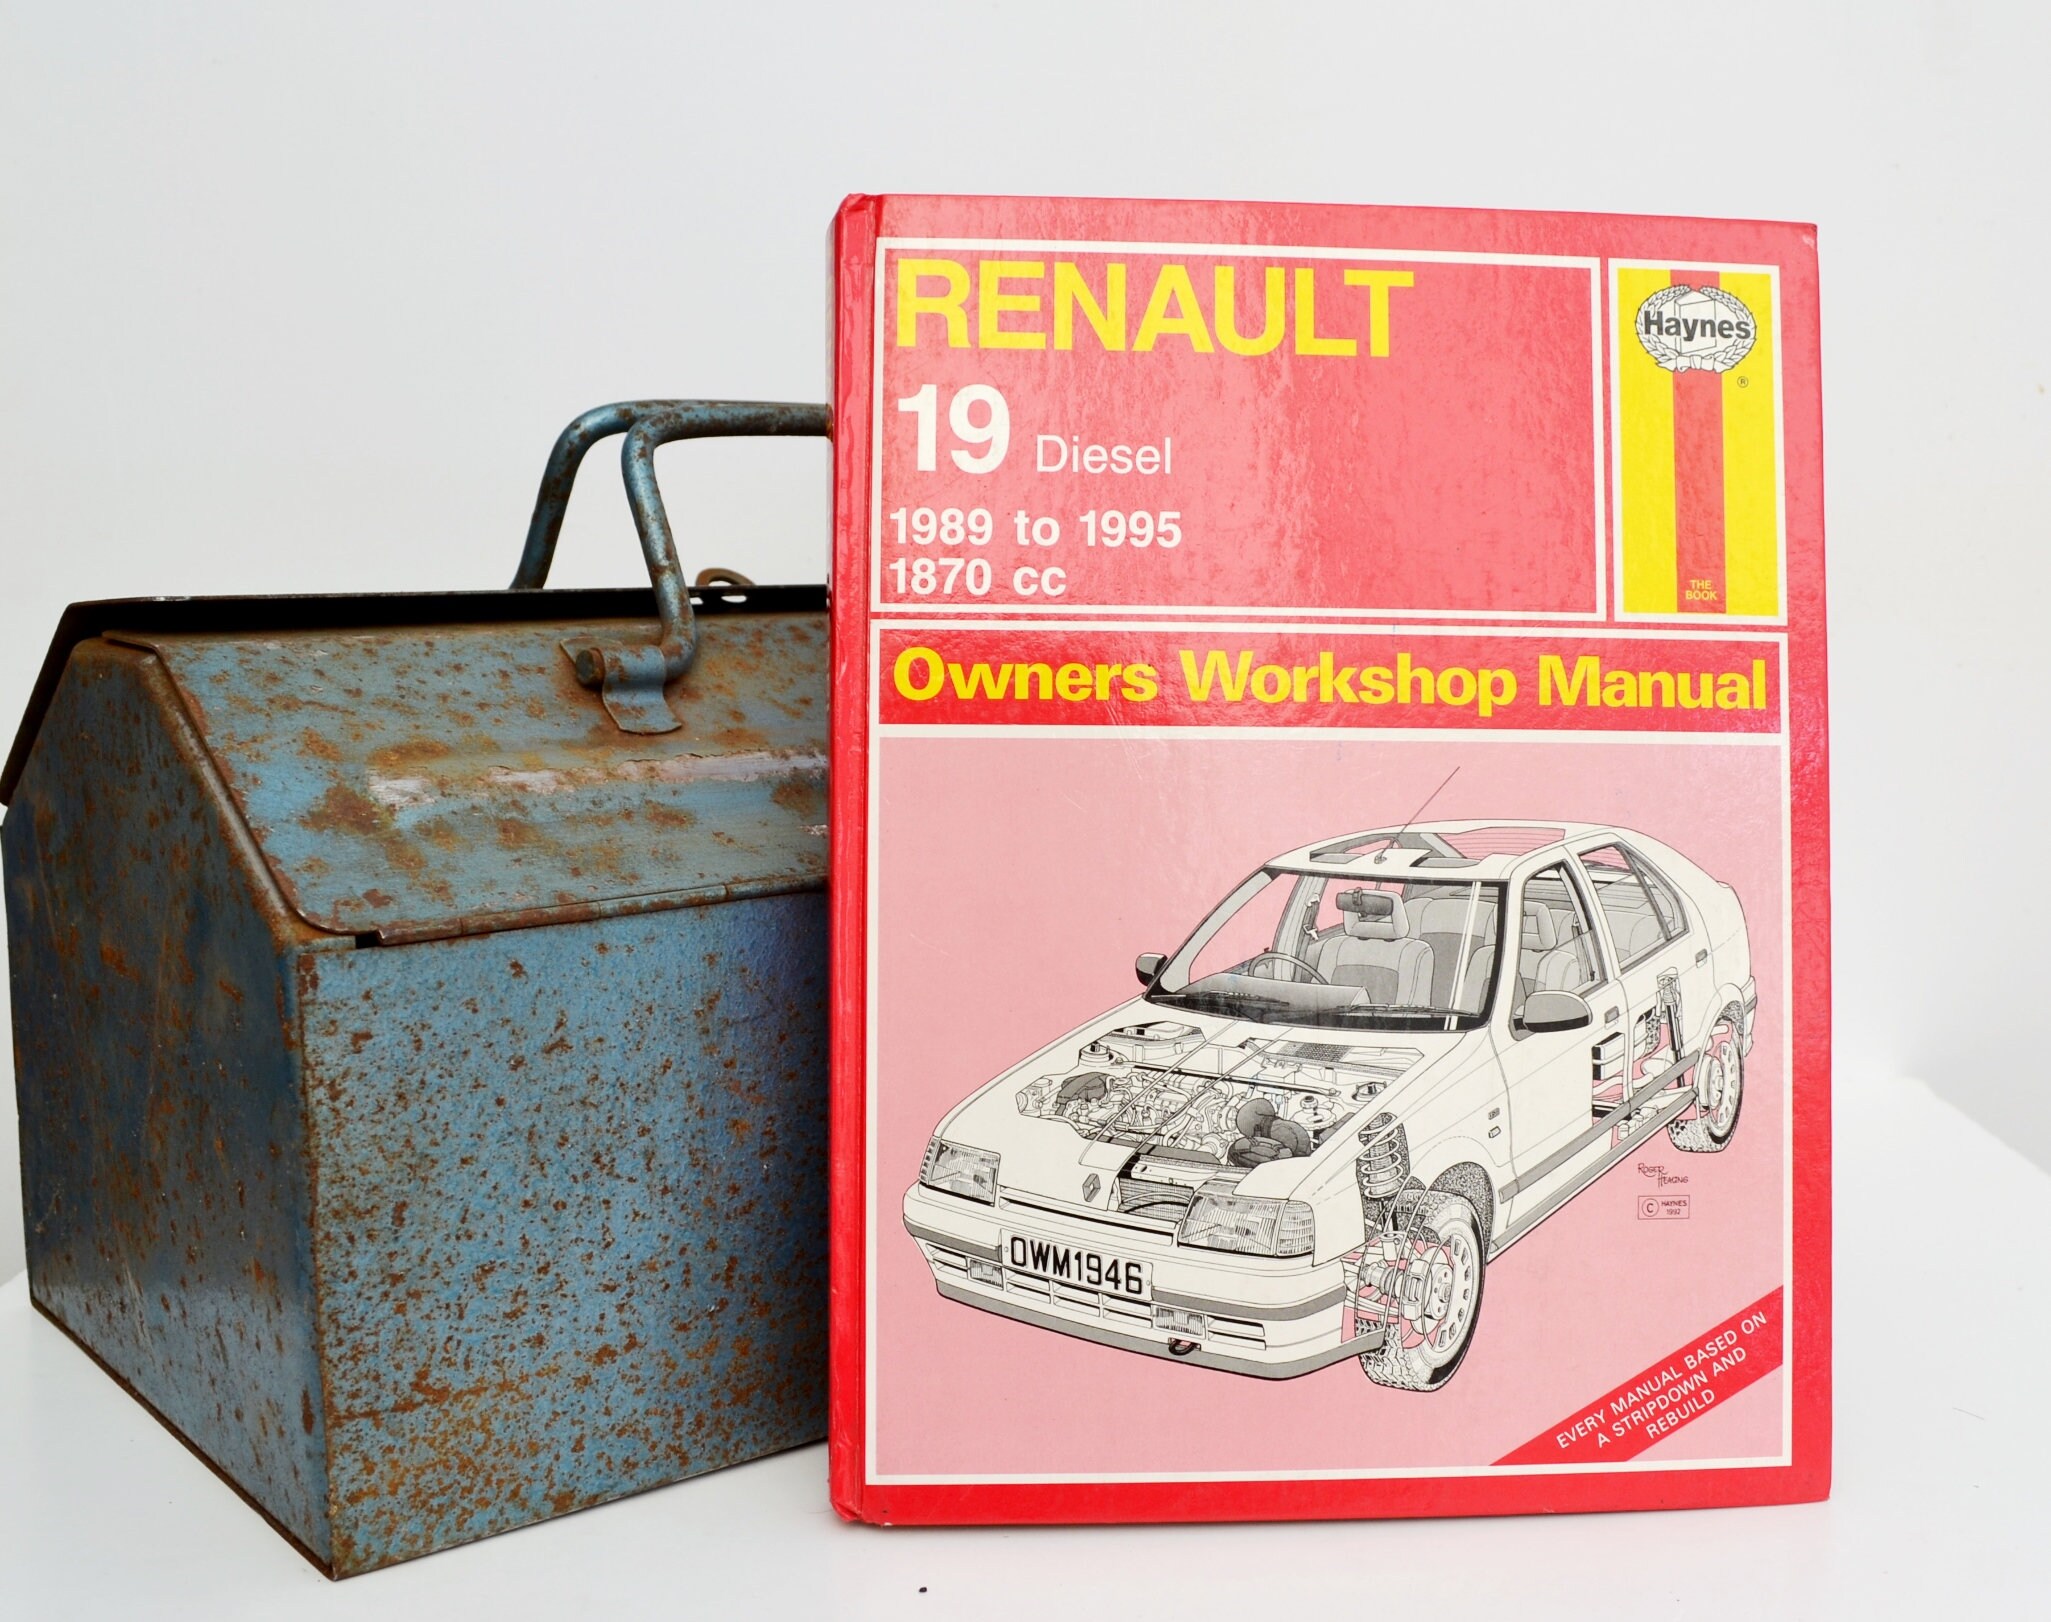 Haynes Owners Workshop Manual ǀ Renault 19 ǀ Renault Owners Manual ǀ